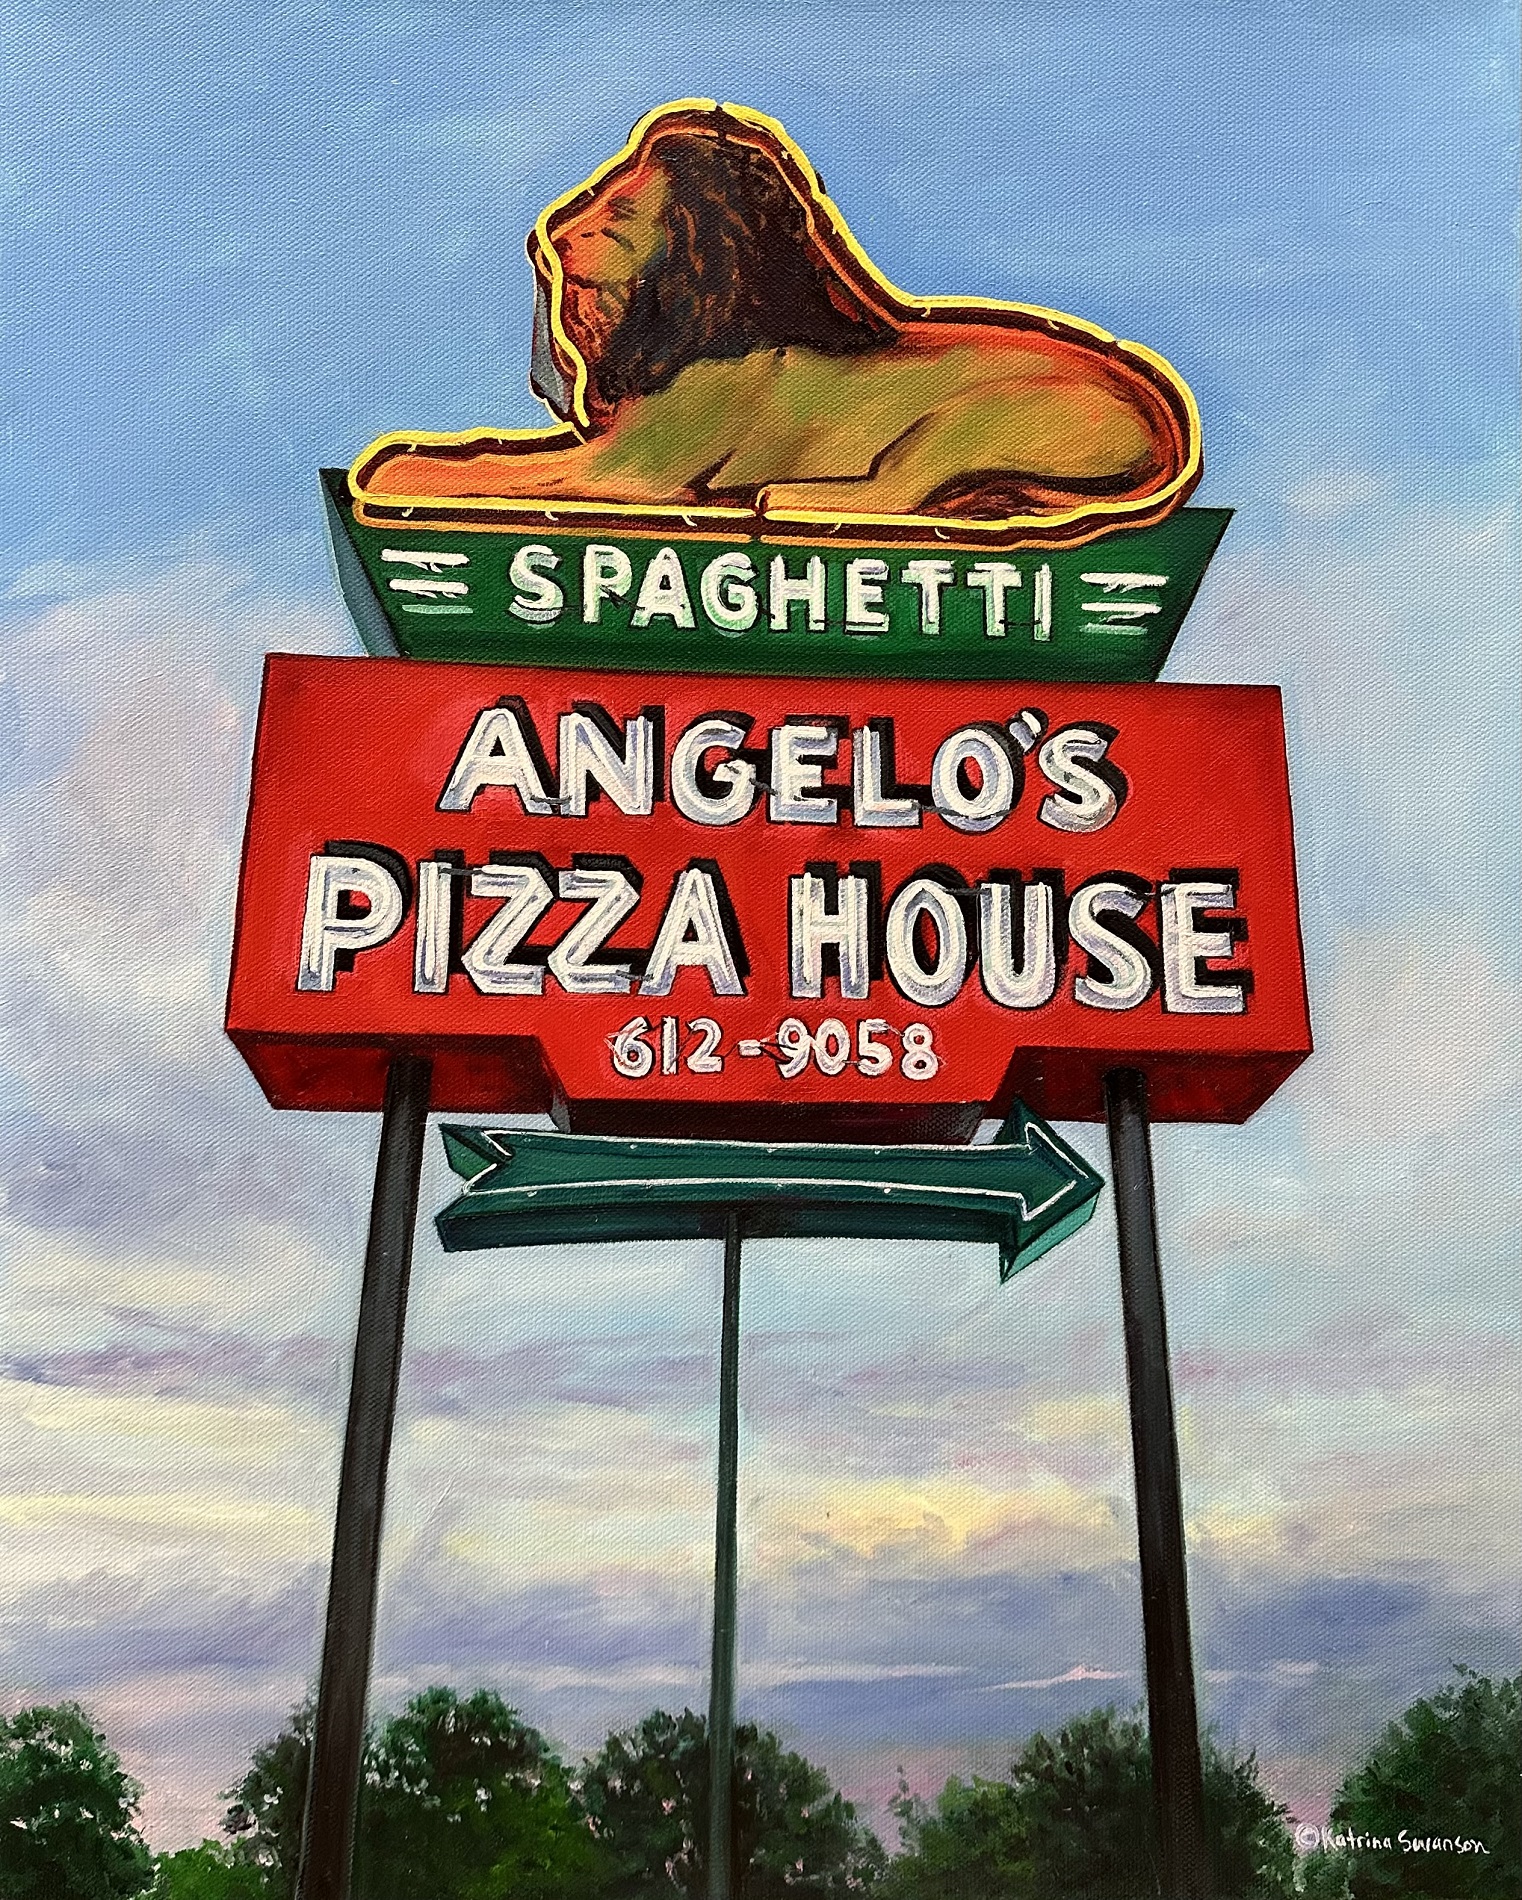 Katrina Swanson, “Angelo’s Pizza House”, Oil on canvas